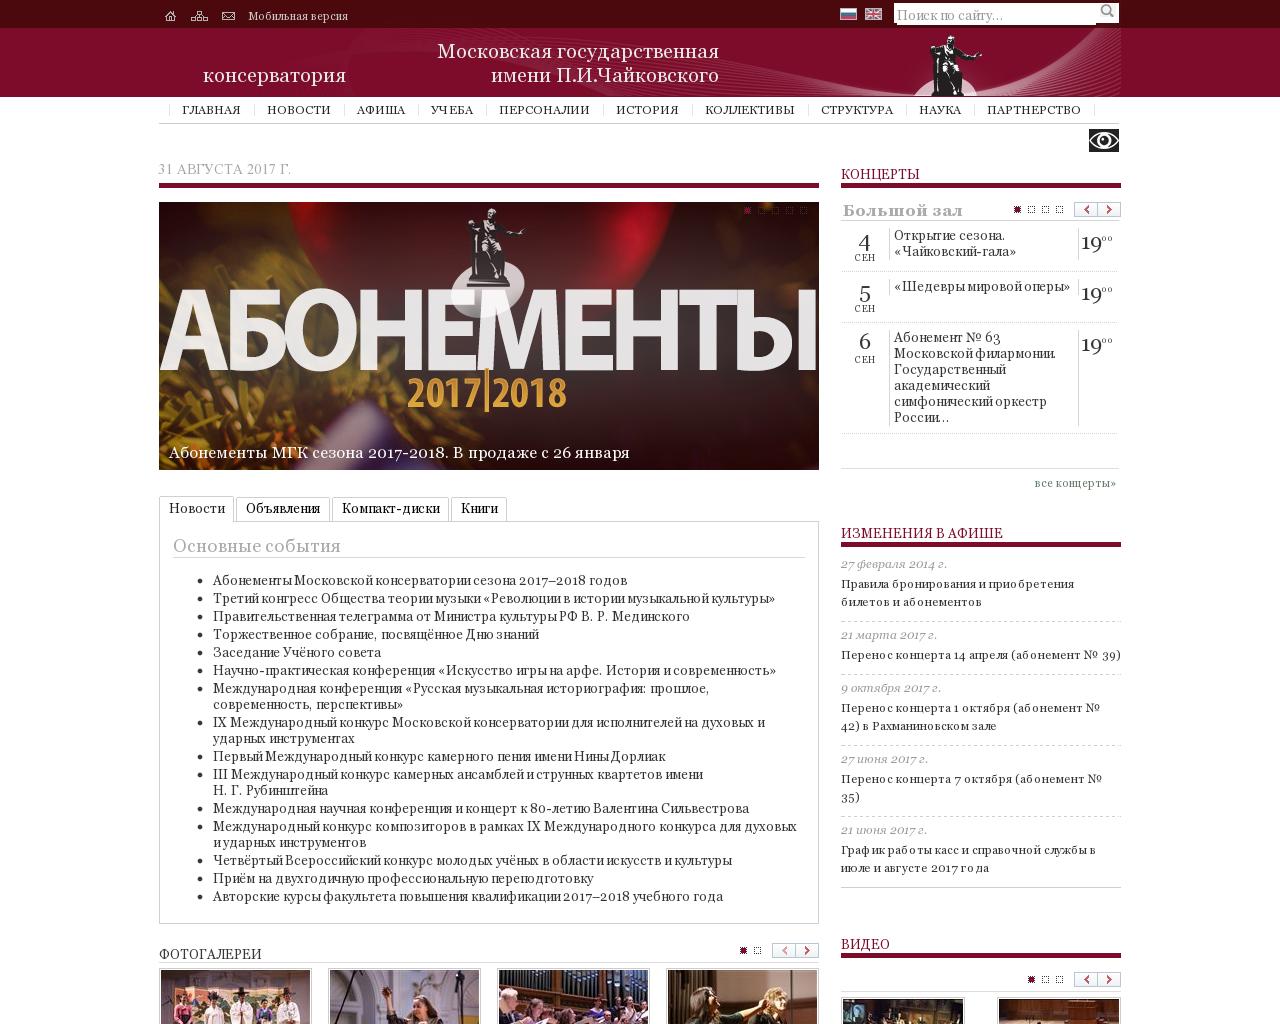 Изображение сайта mosconsv.ru в разрешении 1280x1024